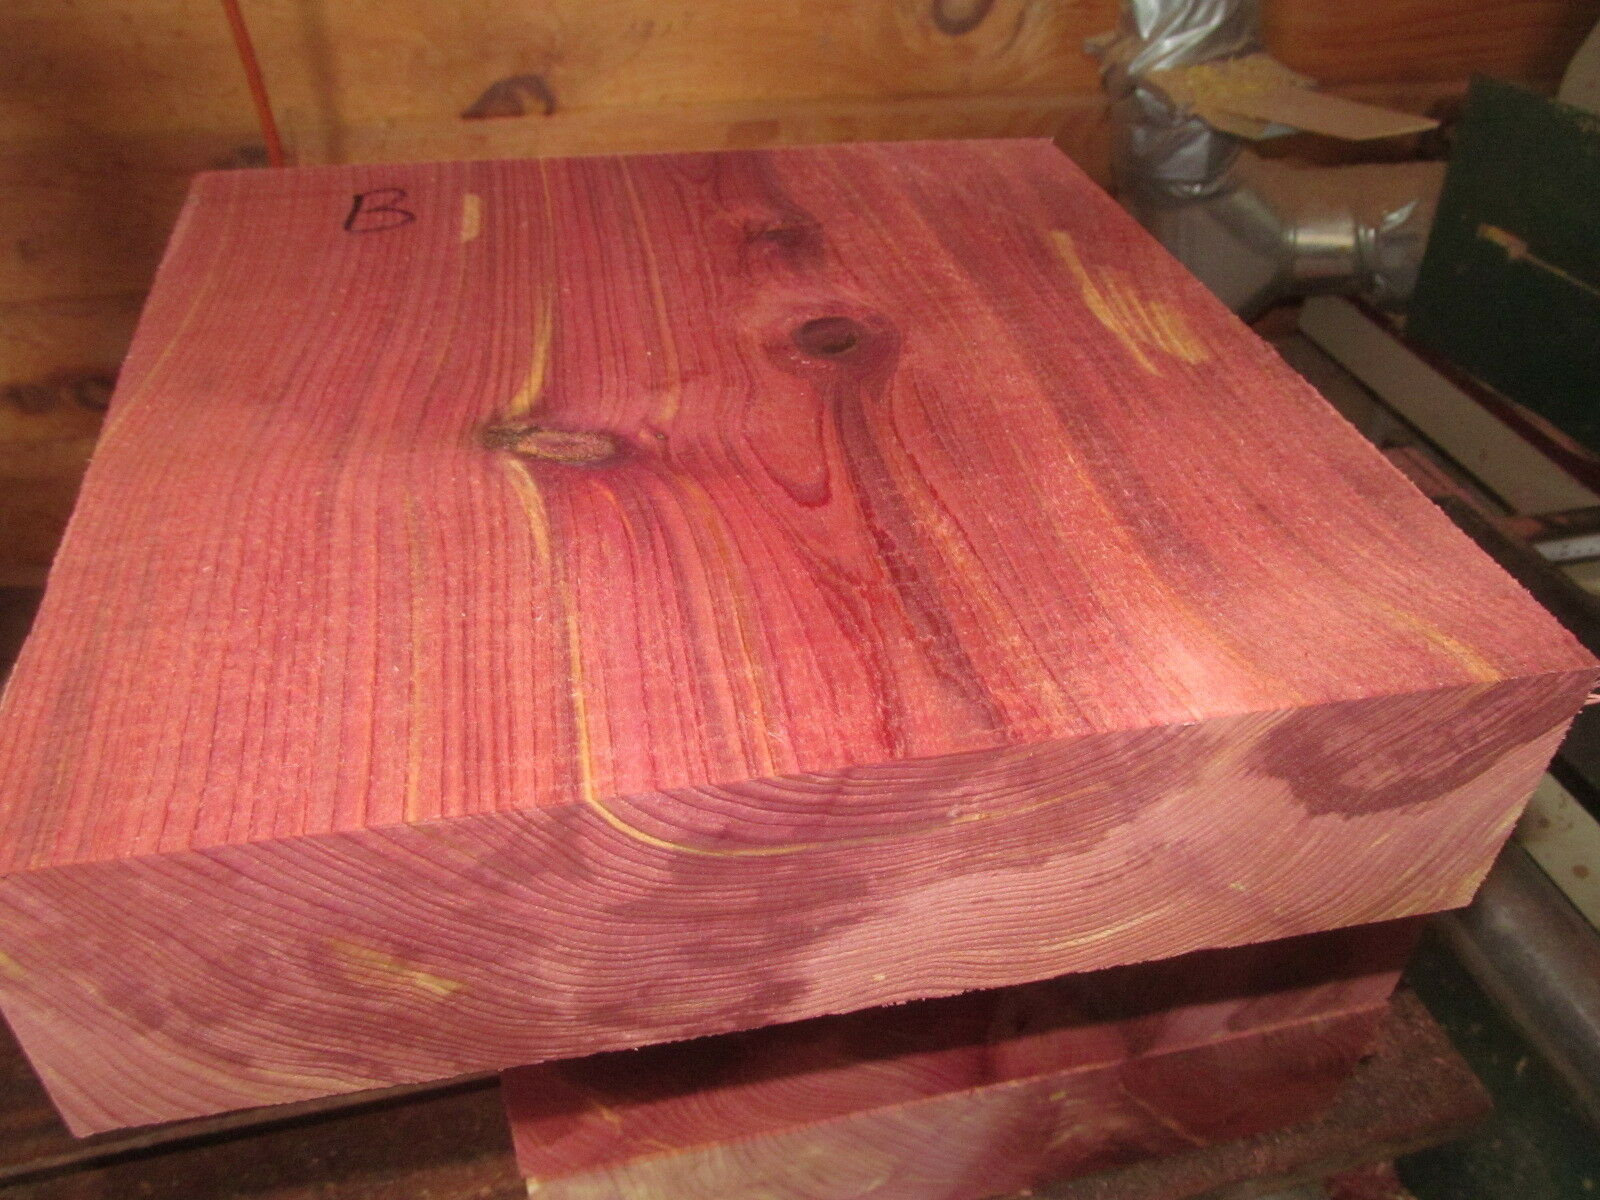 Красное дерево подгон. Красный канадский кедр. Красный кедр дерево. Красный кедр древесина. Древесина красное дерево красный Падук.